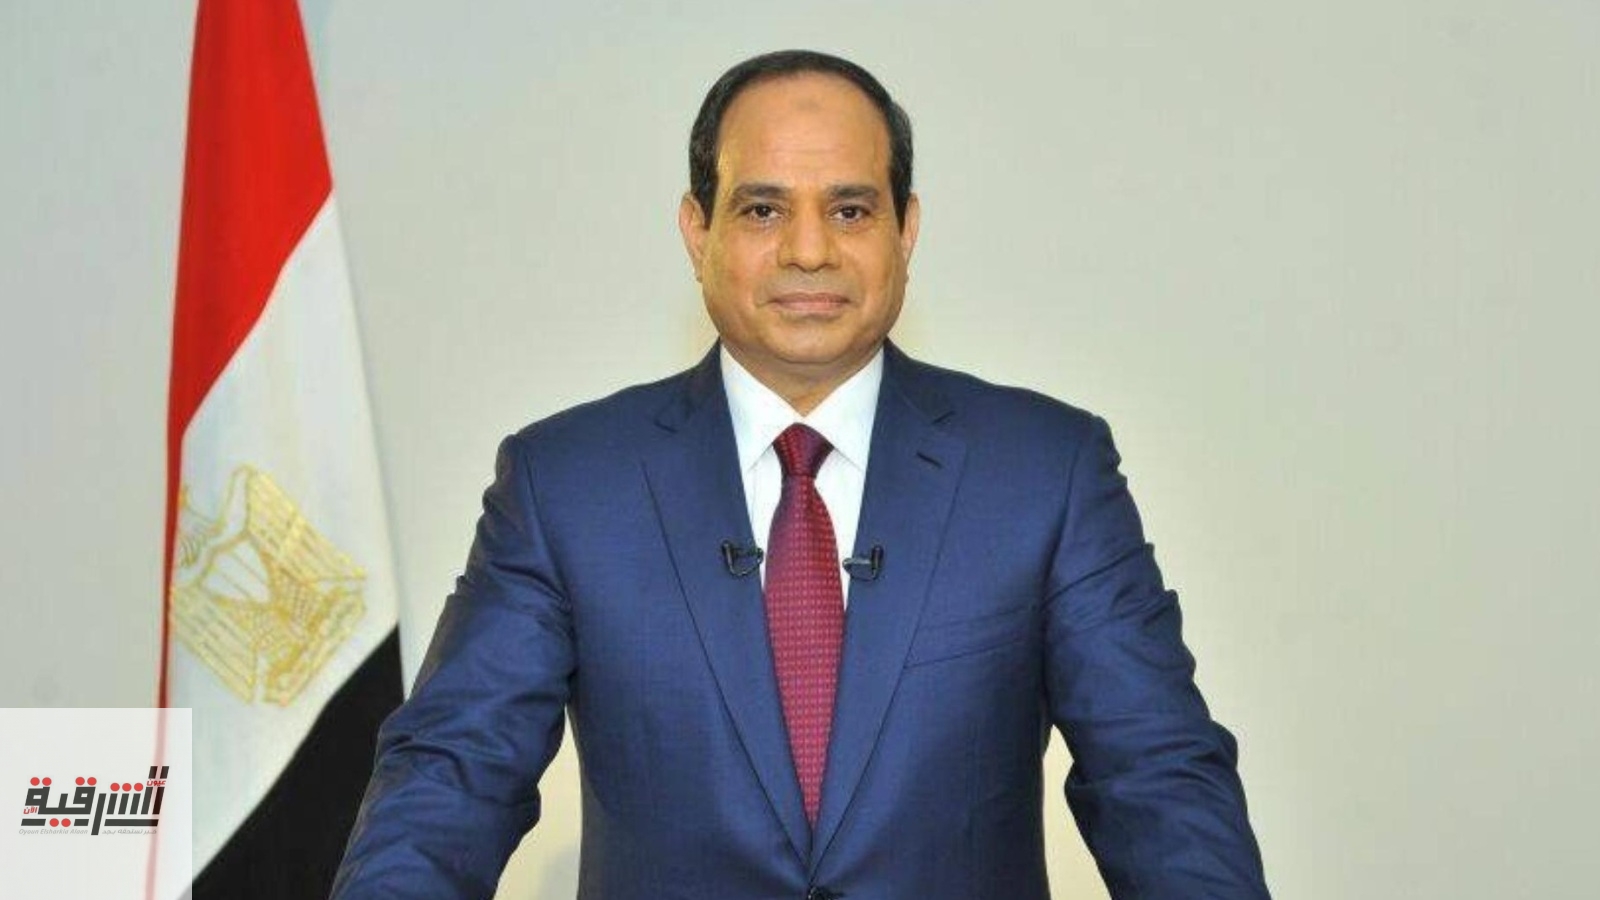 نشرة أخبار جمهورية مصر العربية الثلاثاء 28 ديسمبر 2021